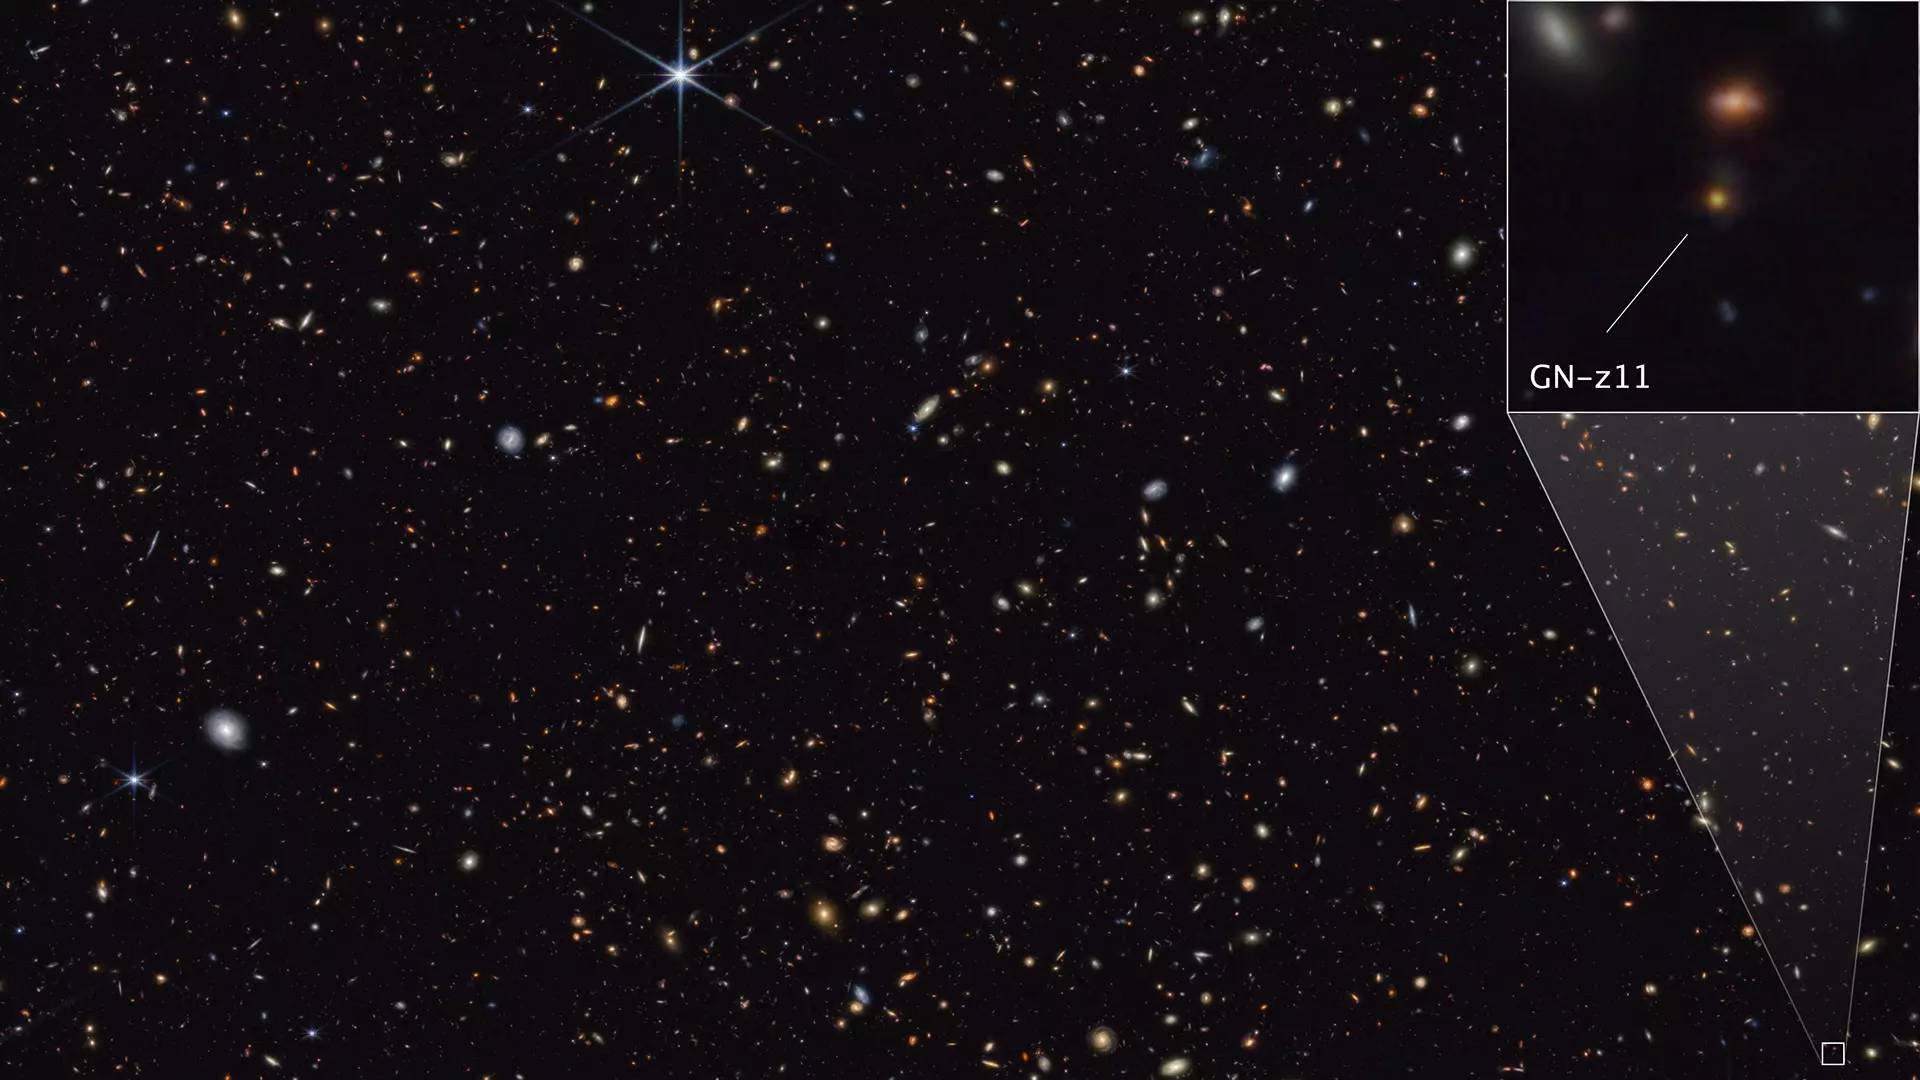 Una parte del campo de galaxias GOODS-Norte se muestra en esta imagen realizada por el NIRCam (Near-Infrared Camera) del Webb